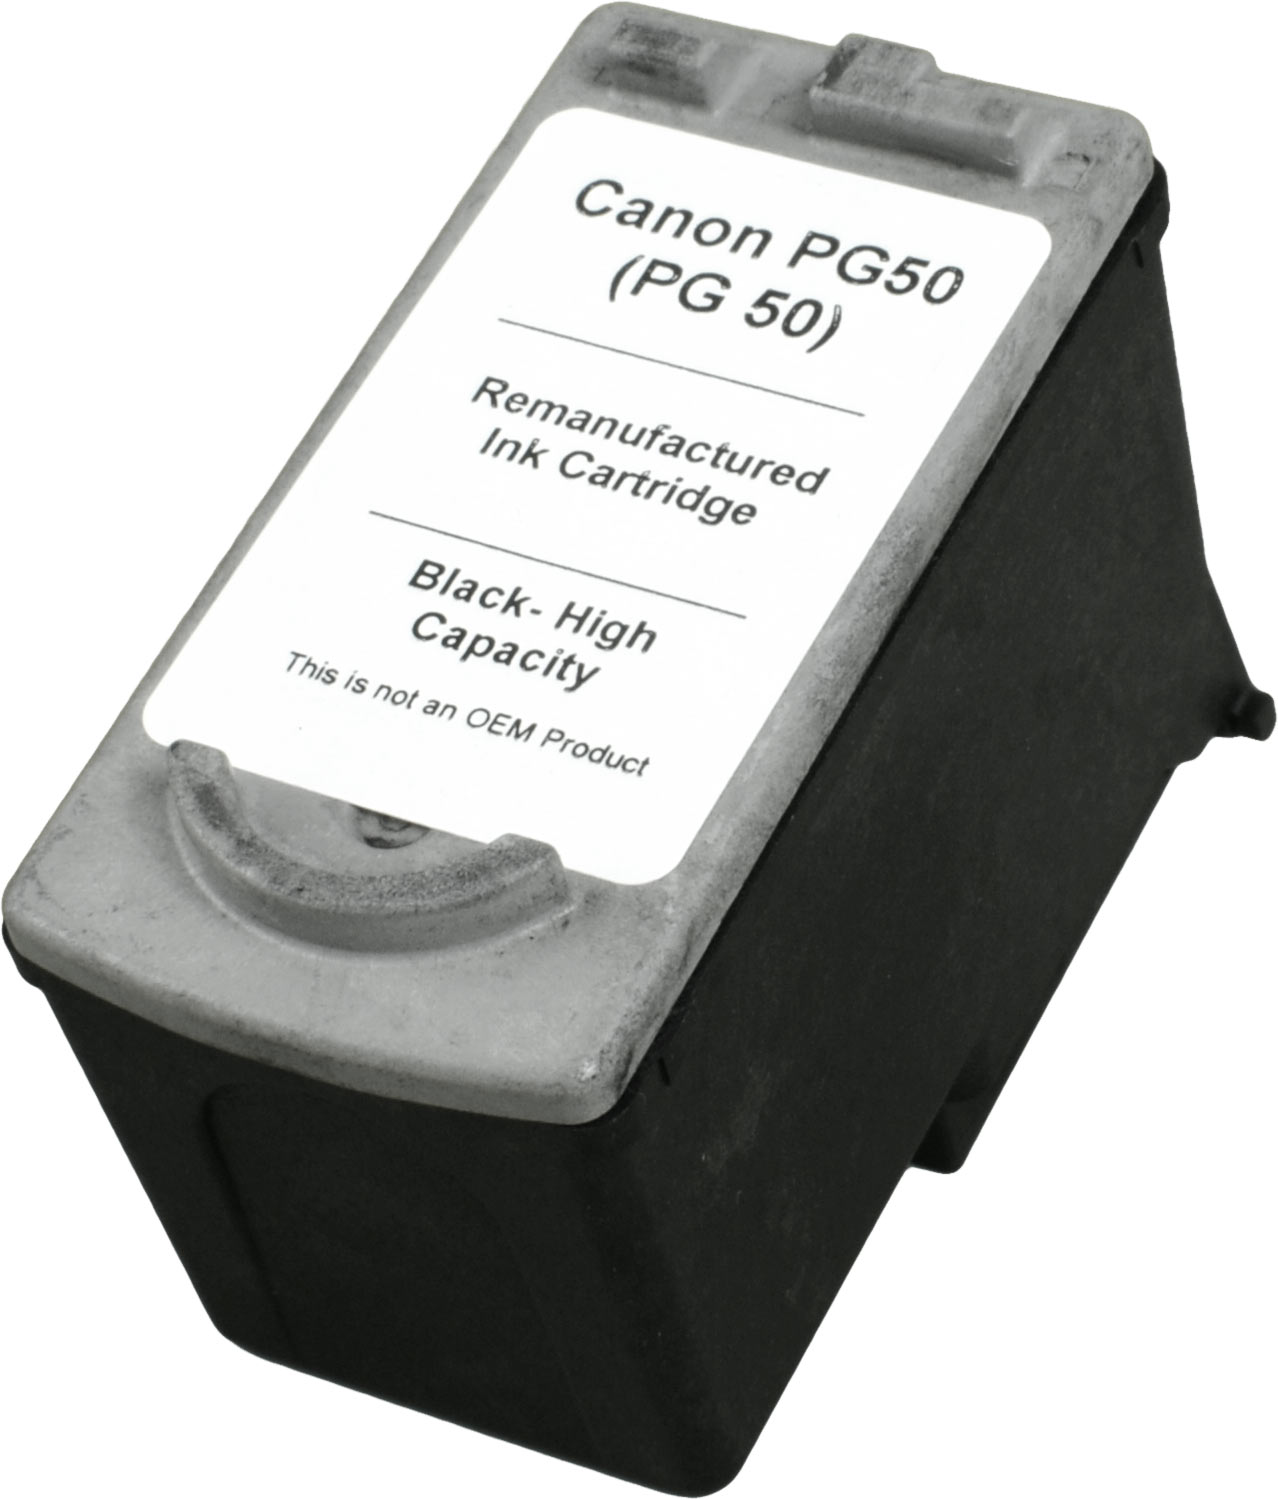 Ampertec Tinte für Canon PG-40 / PG-50  schwarz